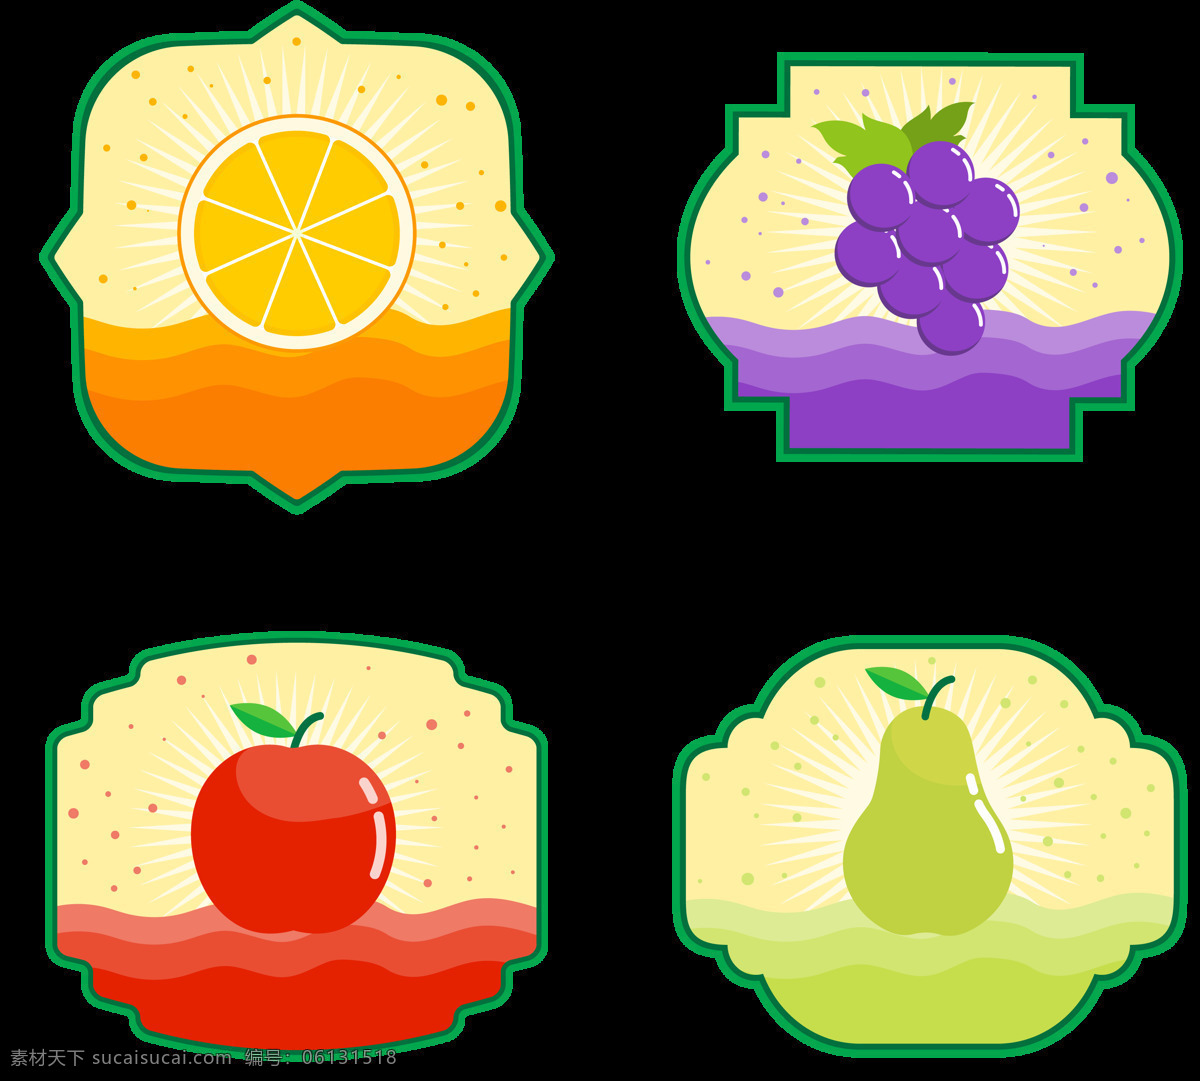 创意 水果 标签 边框 免 抠 透明 图 层 水果标签 彩色水果卡片 水果花边 彩色图标 彩色卡片 清新素材 手绘水果素材 促销标签 彩色标签 手绘水果 水果促销素材 手绘标签 清新水果